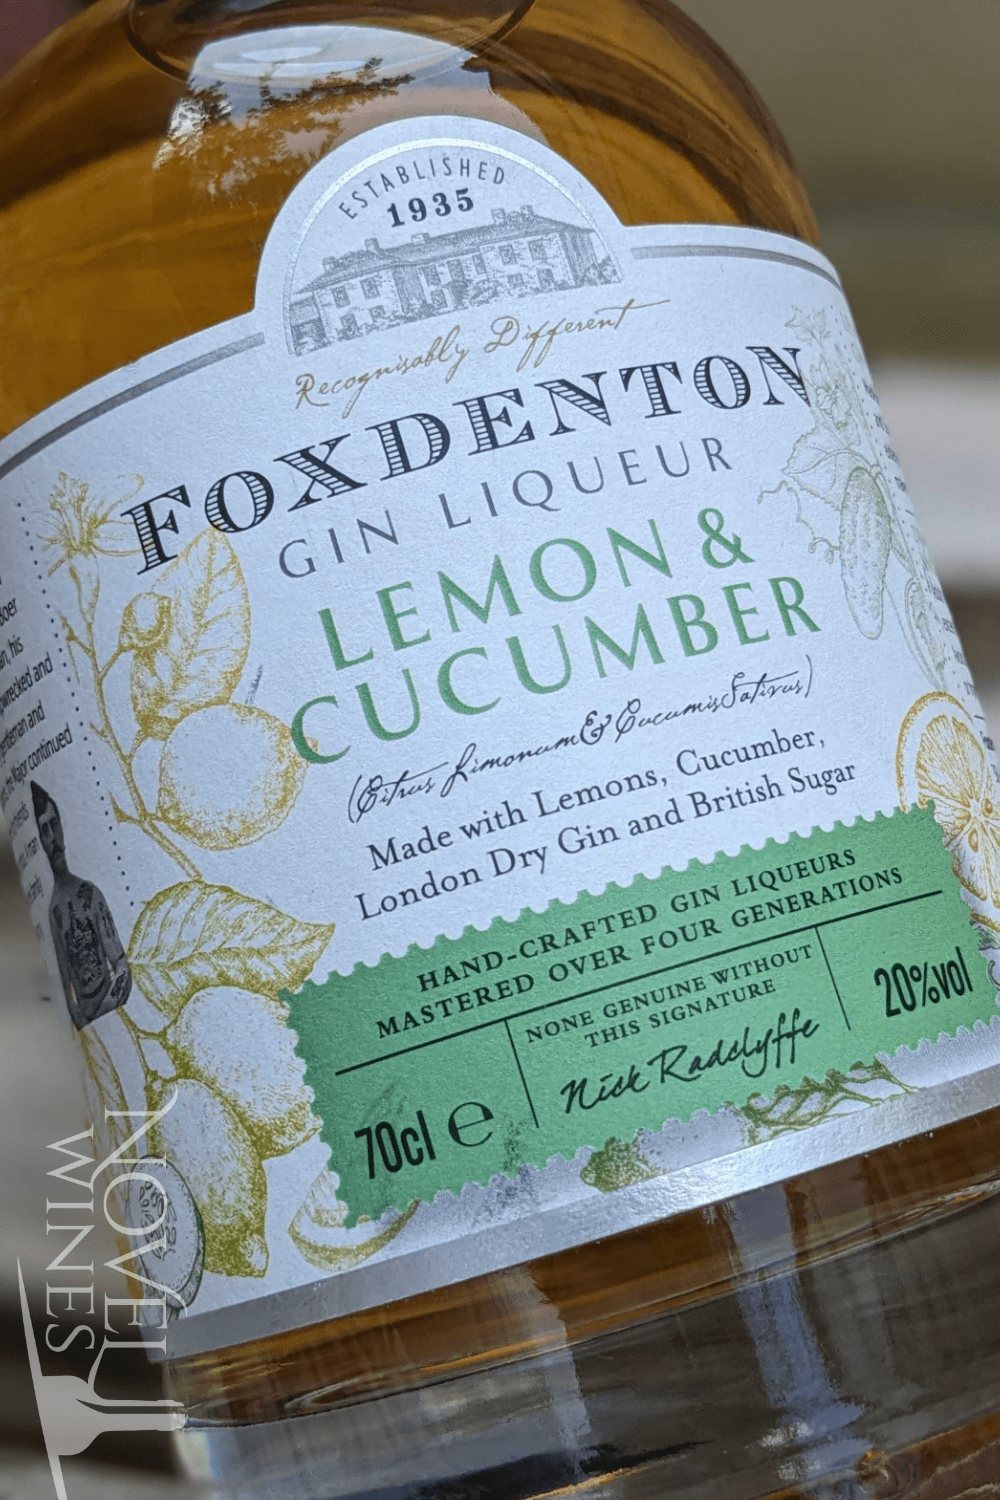 Foxdenton Estate Liqueur Foxdenton Lemon and Cucumber Gin Liqueur 20.0% abv, England